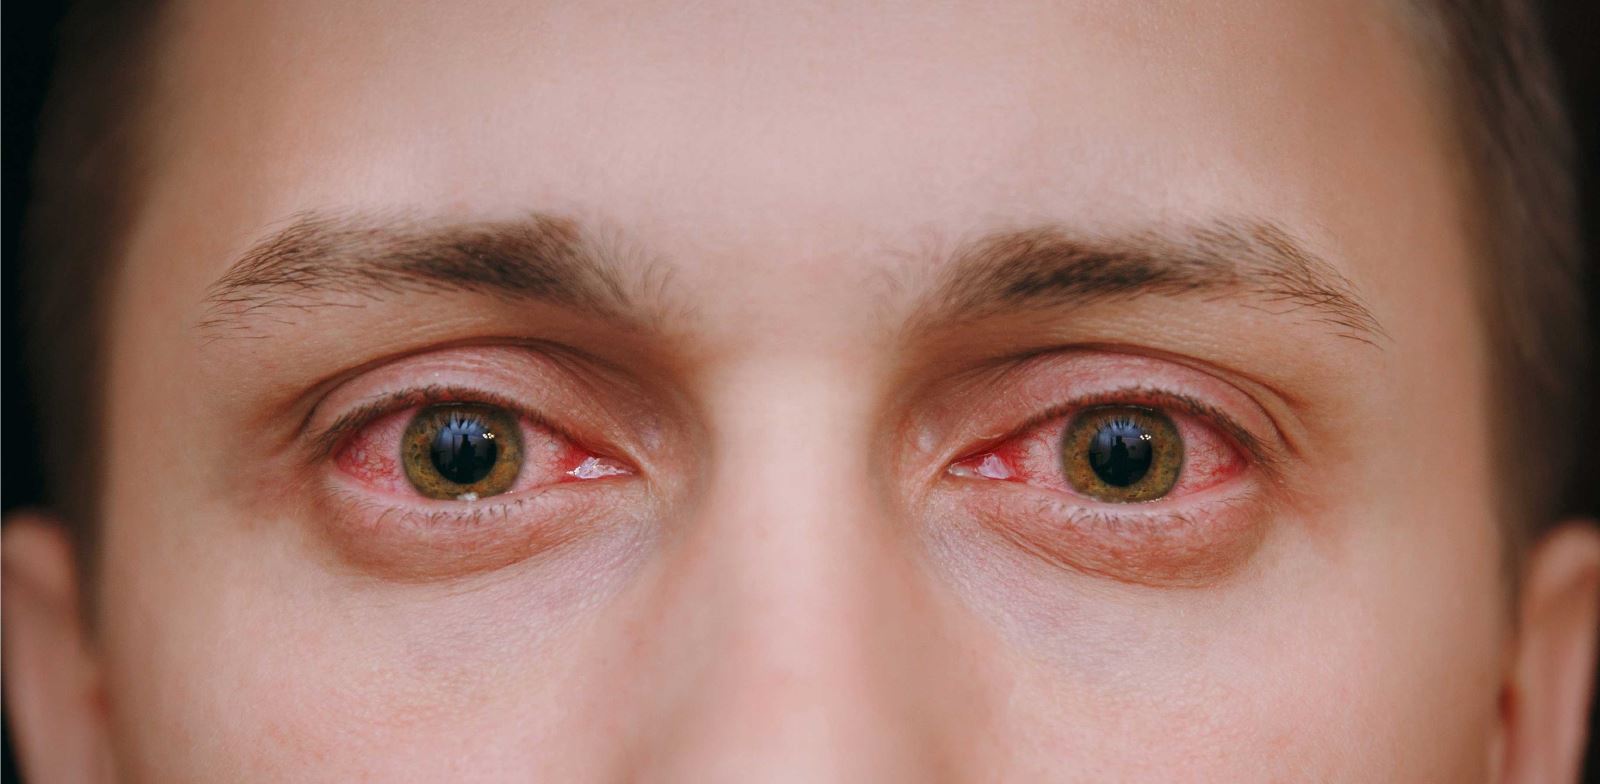 Konjonktivit (Kırmızı Göz Hastalığı) Belirtileri, Nedenleri ve Tedavisi | Emsey Hospital